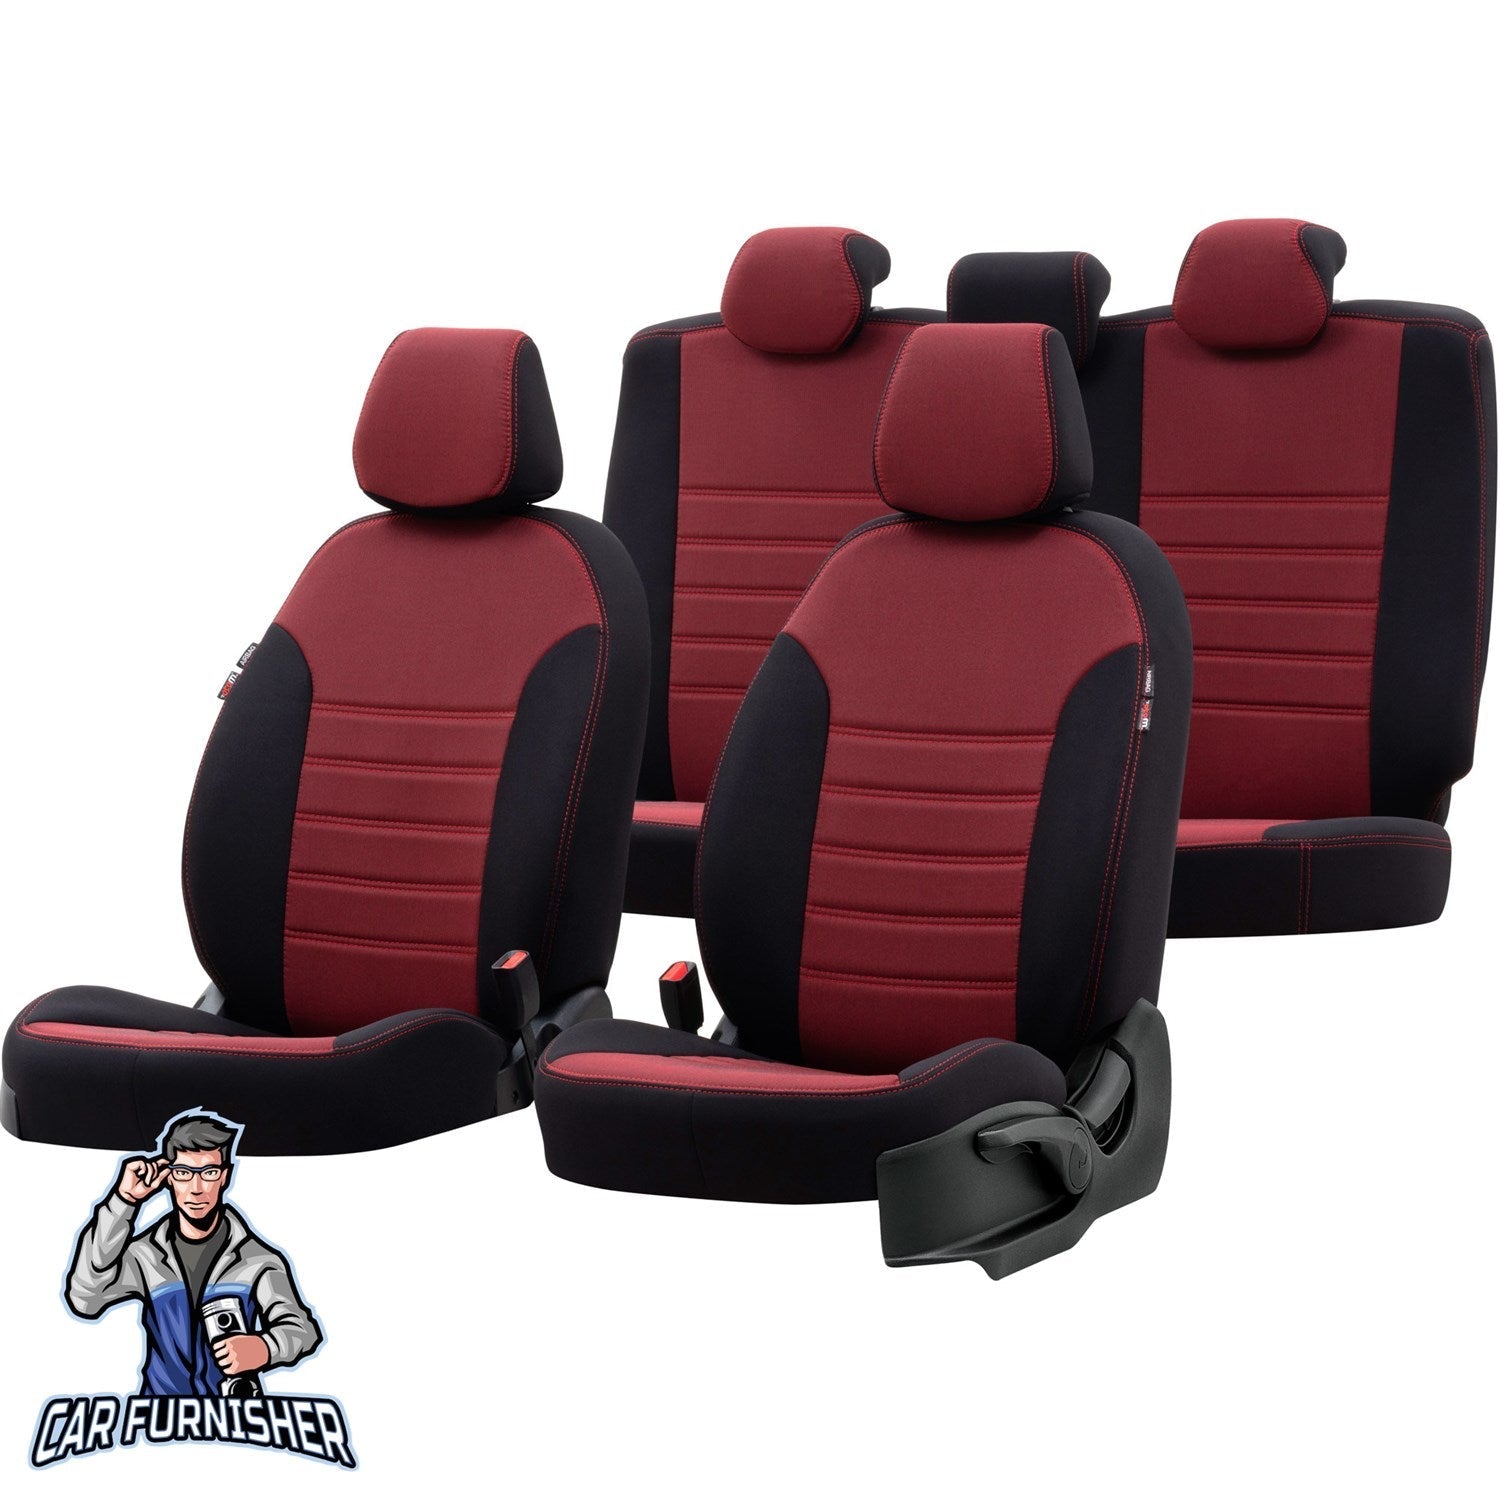 Toyota Camry Seat Cover Original Jacquard Design Red Jacquard Fabric